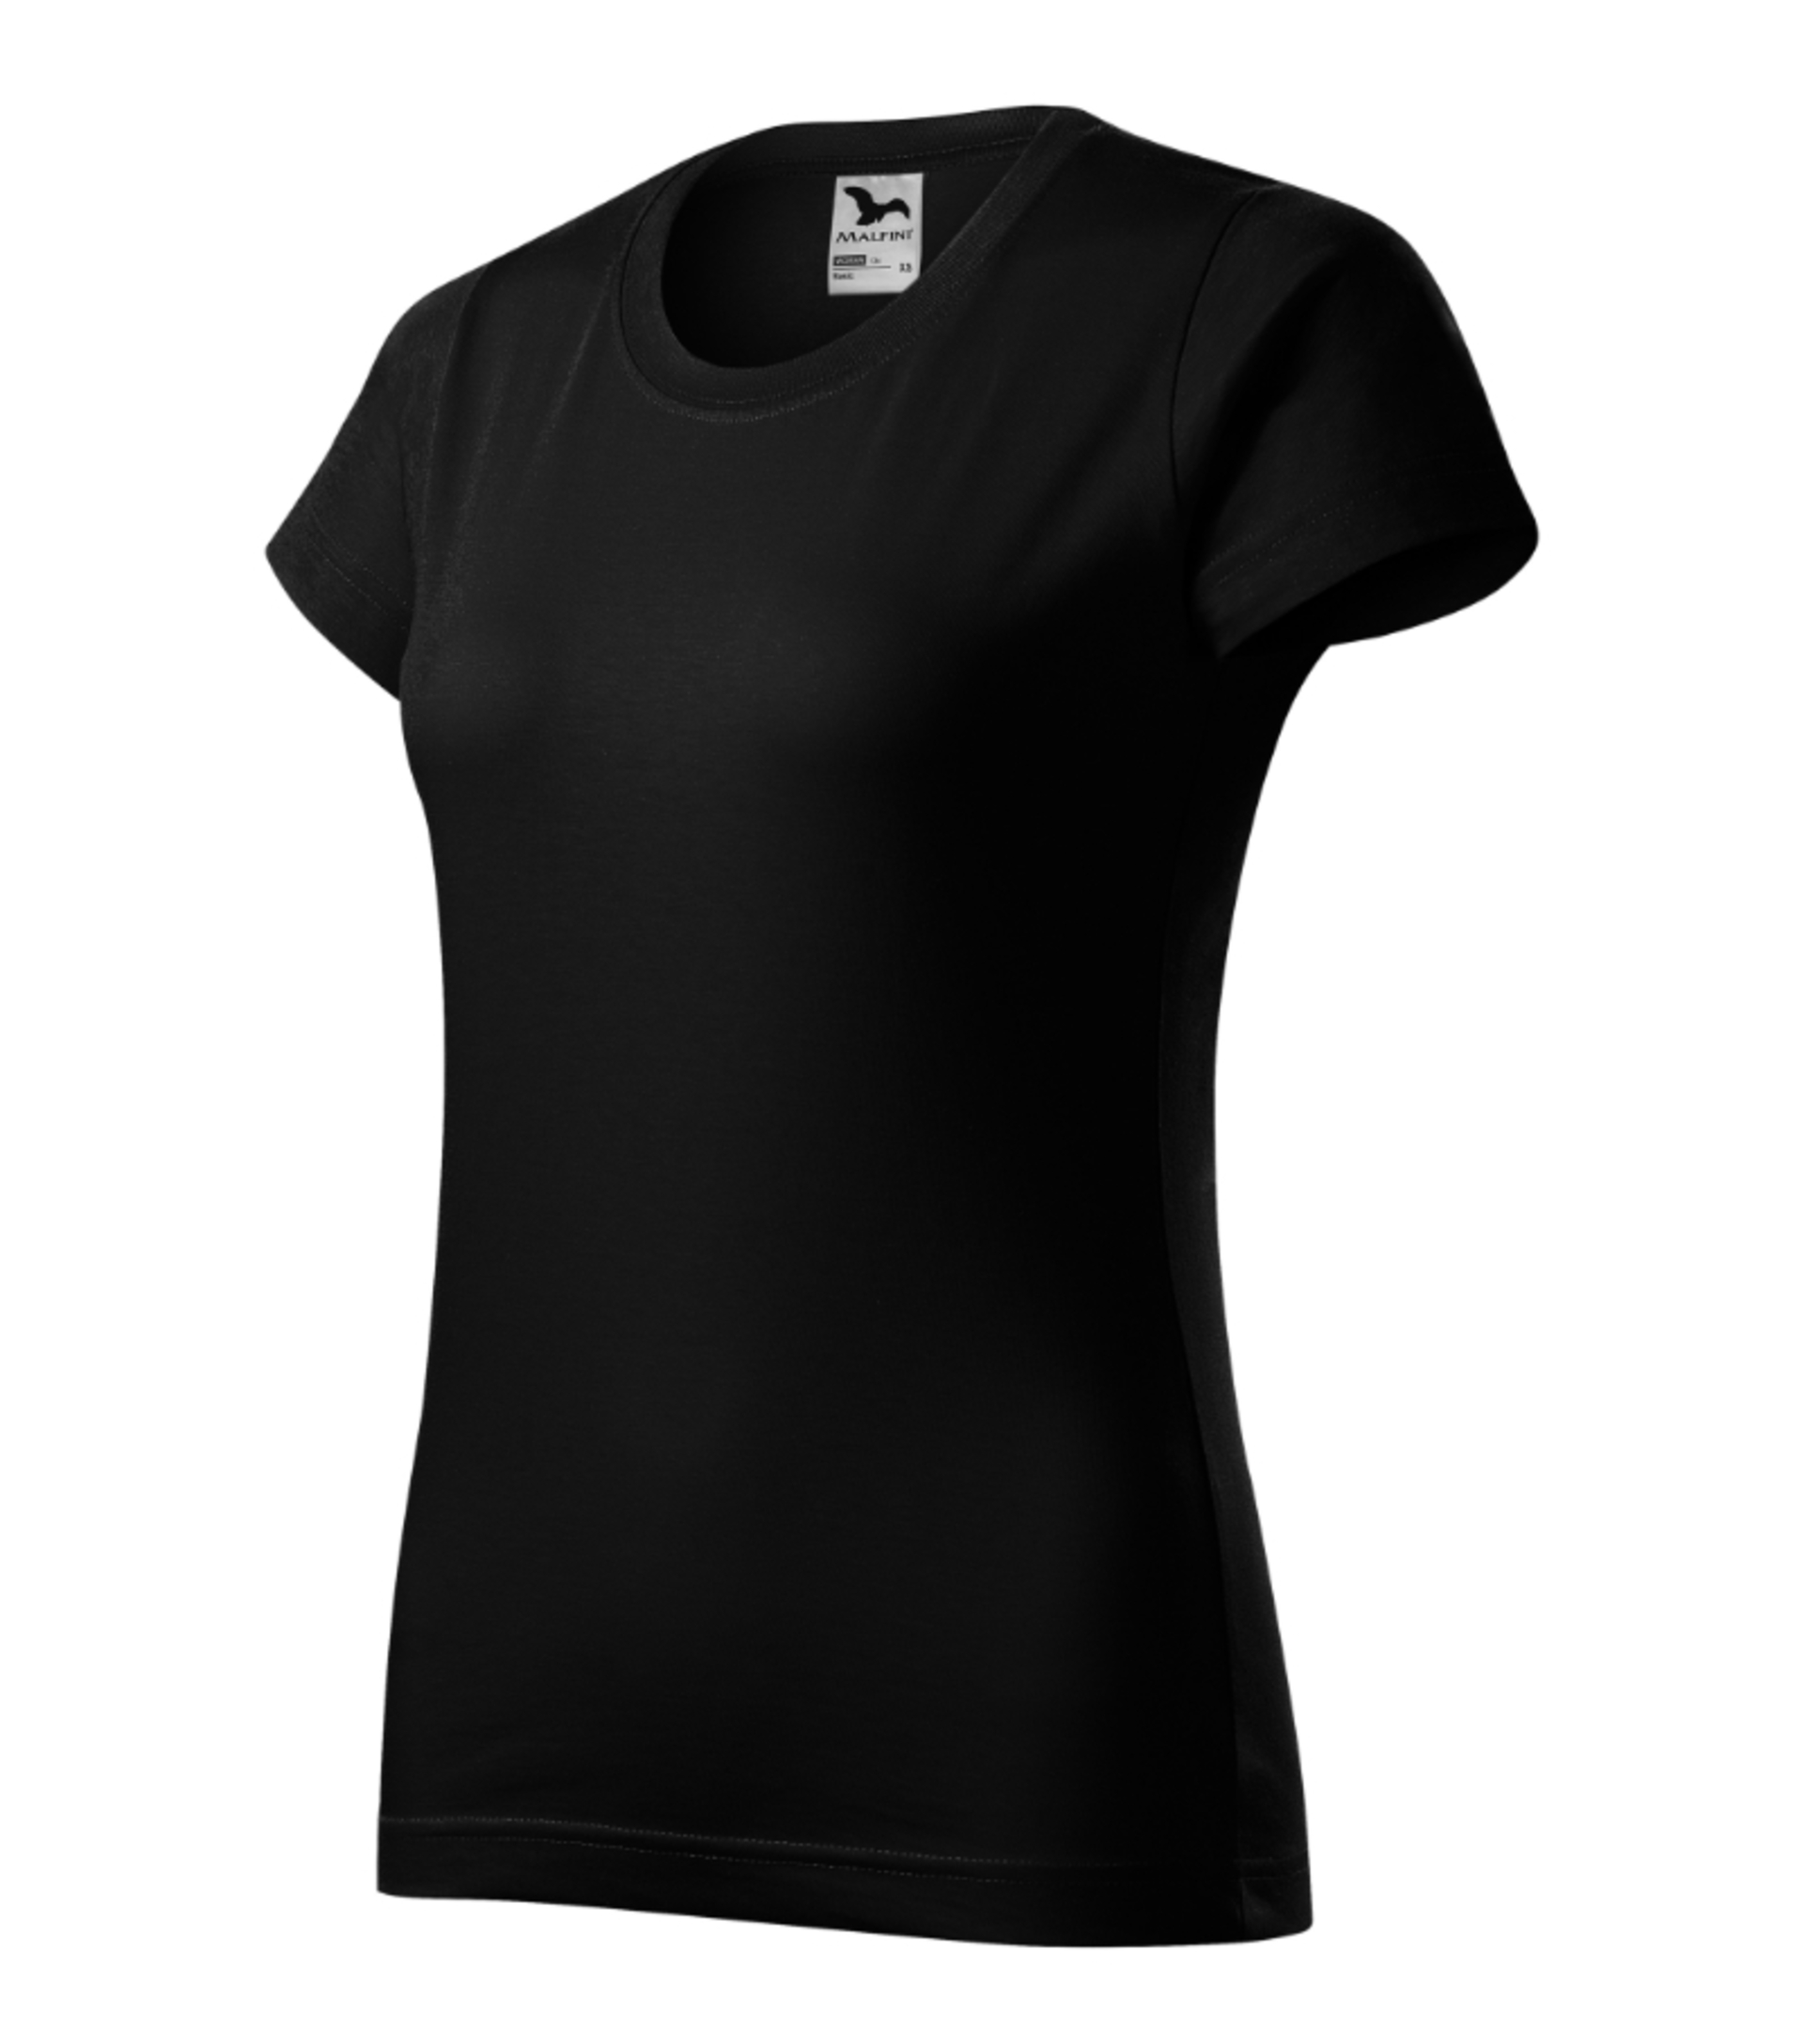 Malfini ADLER BASIC dámské Tričko černá L + Bezplatné vrácení zboží